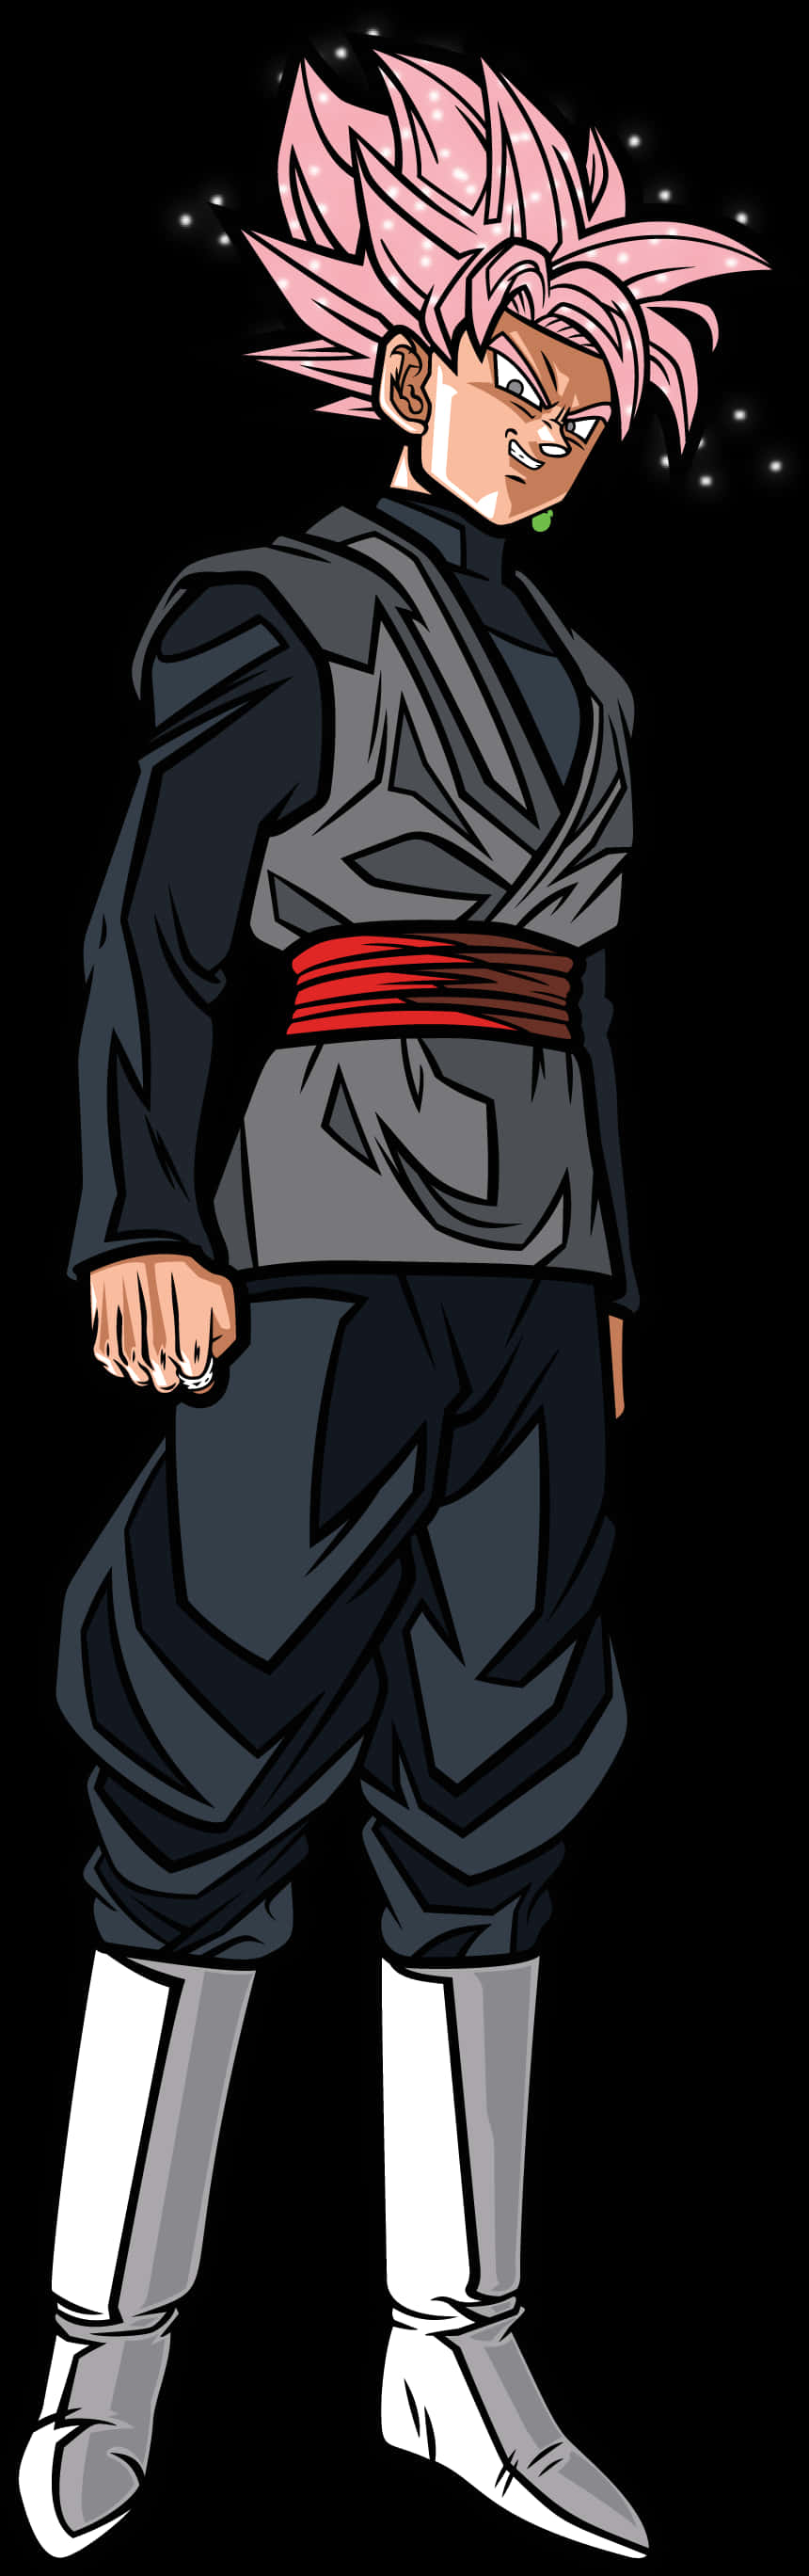 A Cartoon Of A Man Wearing A Garment